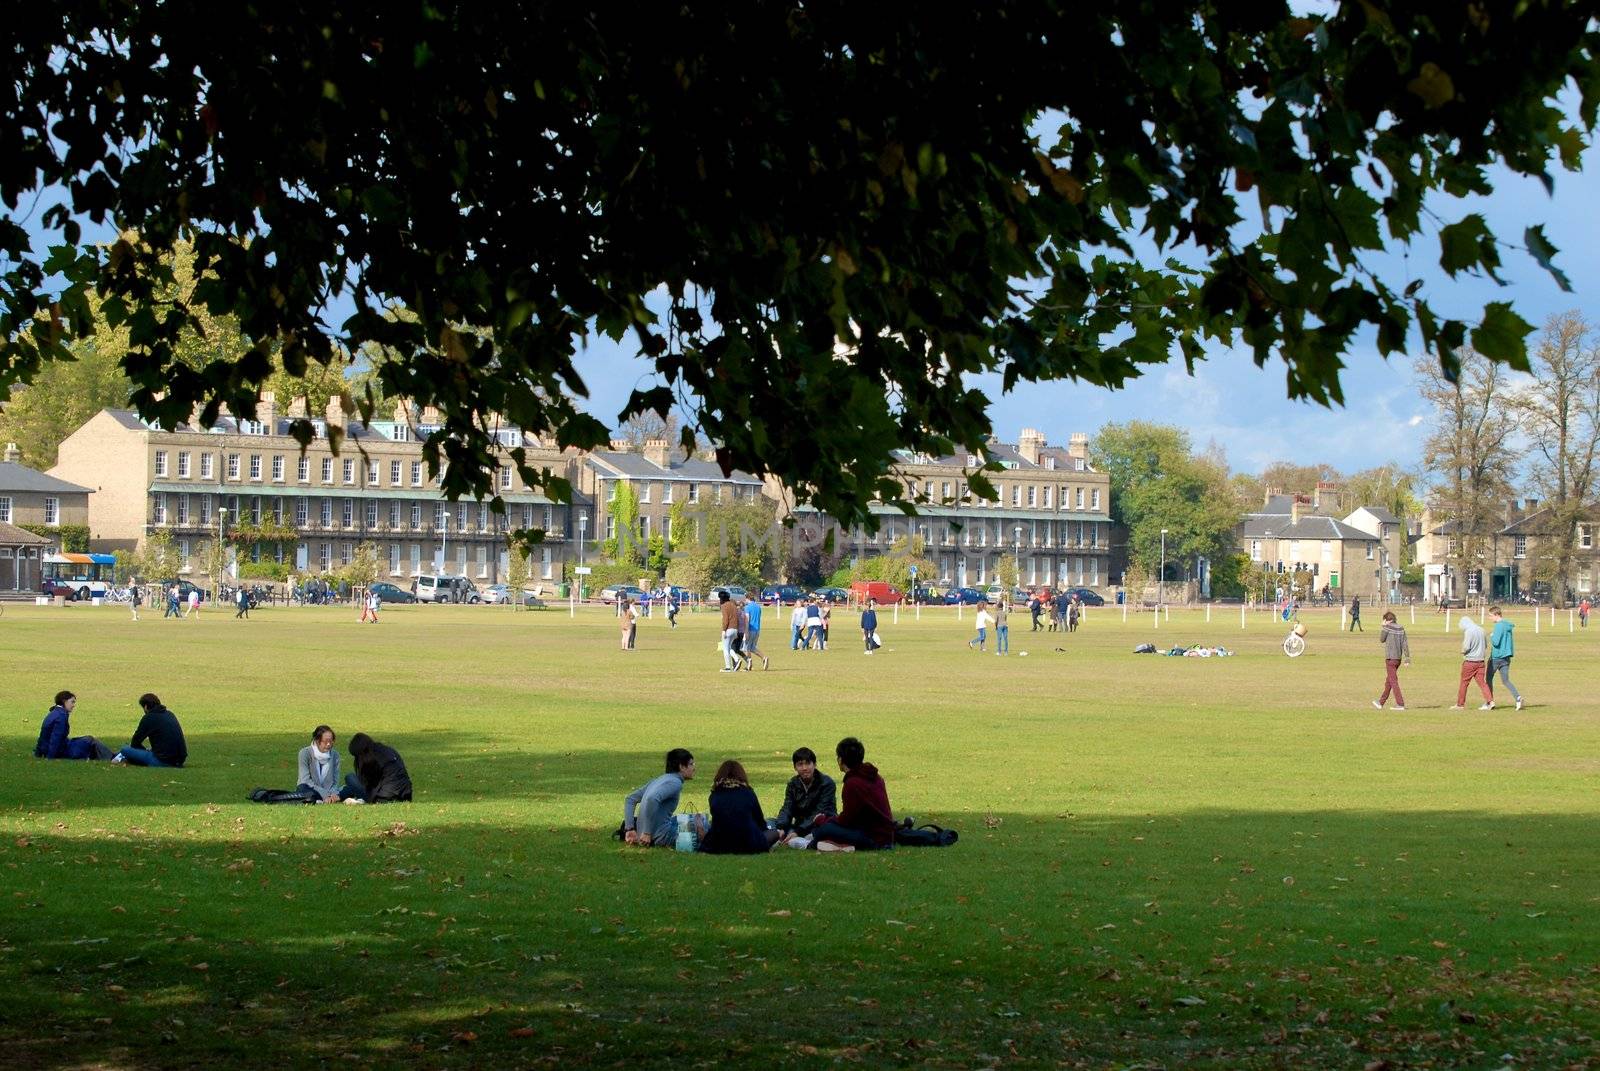 Students in Cambridge by Bildehagen